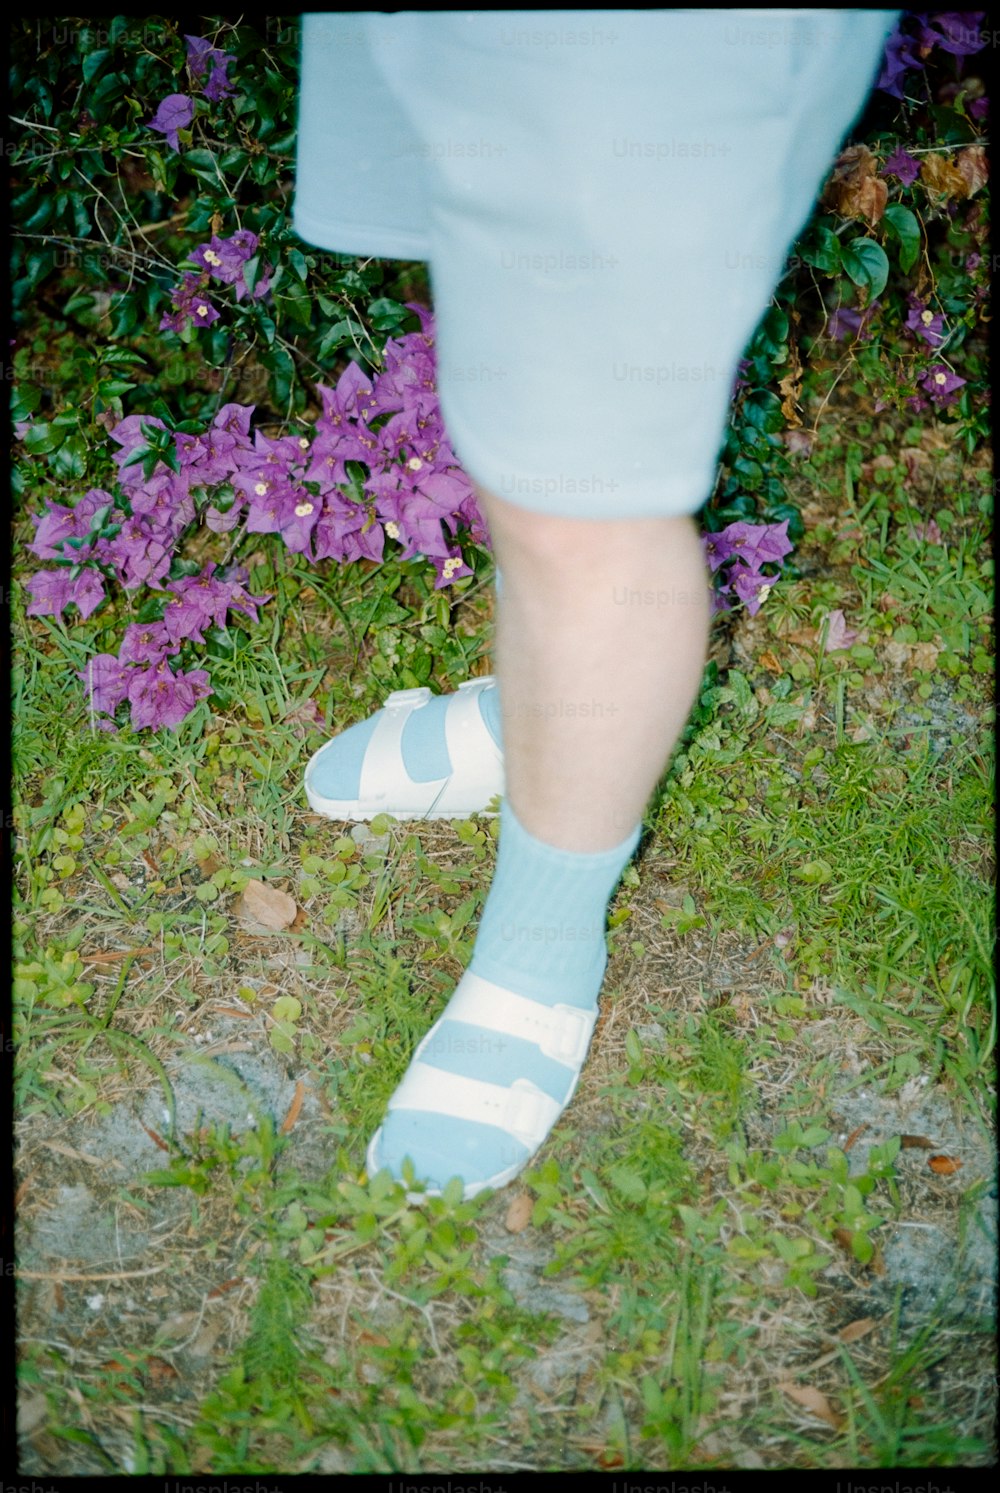 Una persona con calcetines azules y blancos de pie en la hierba